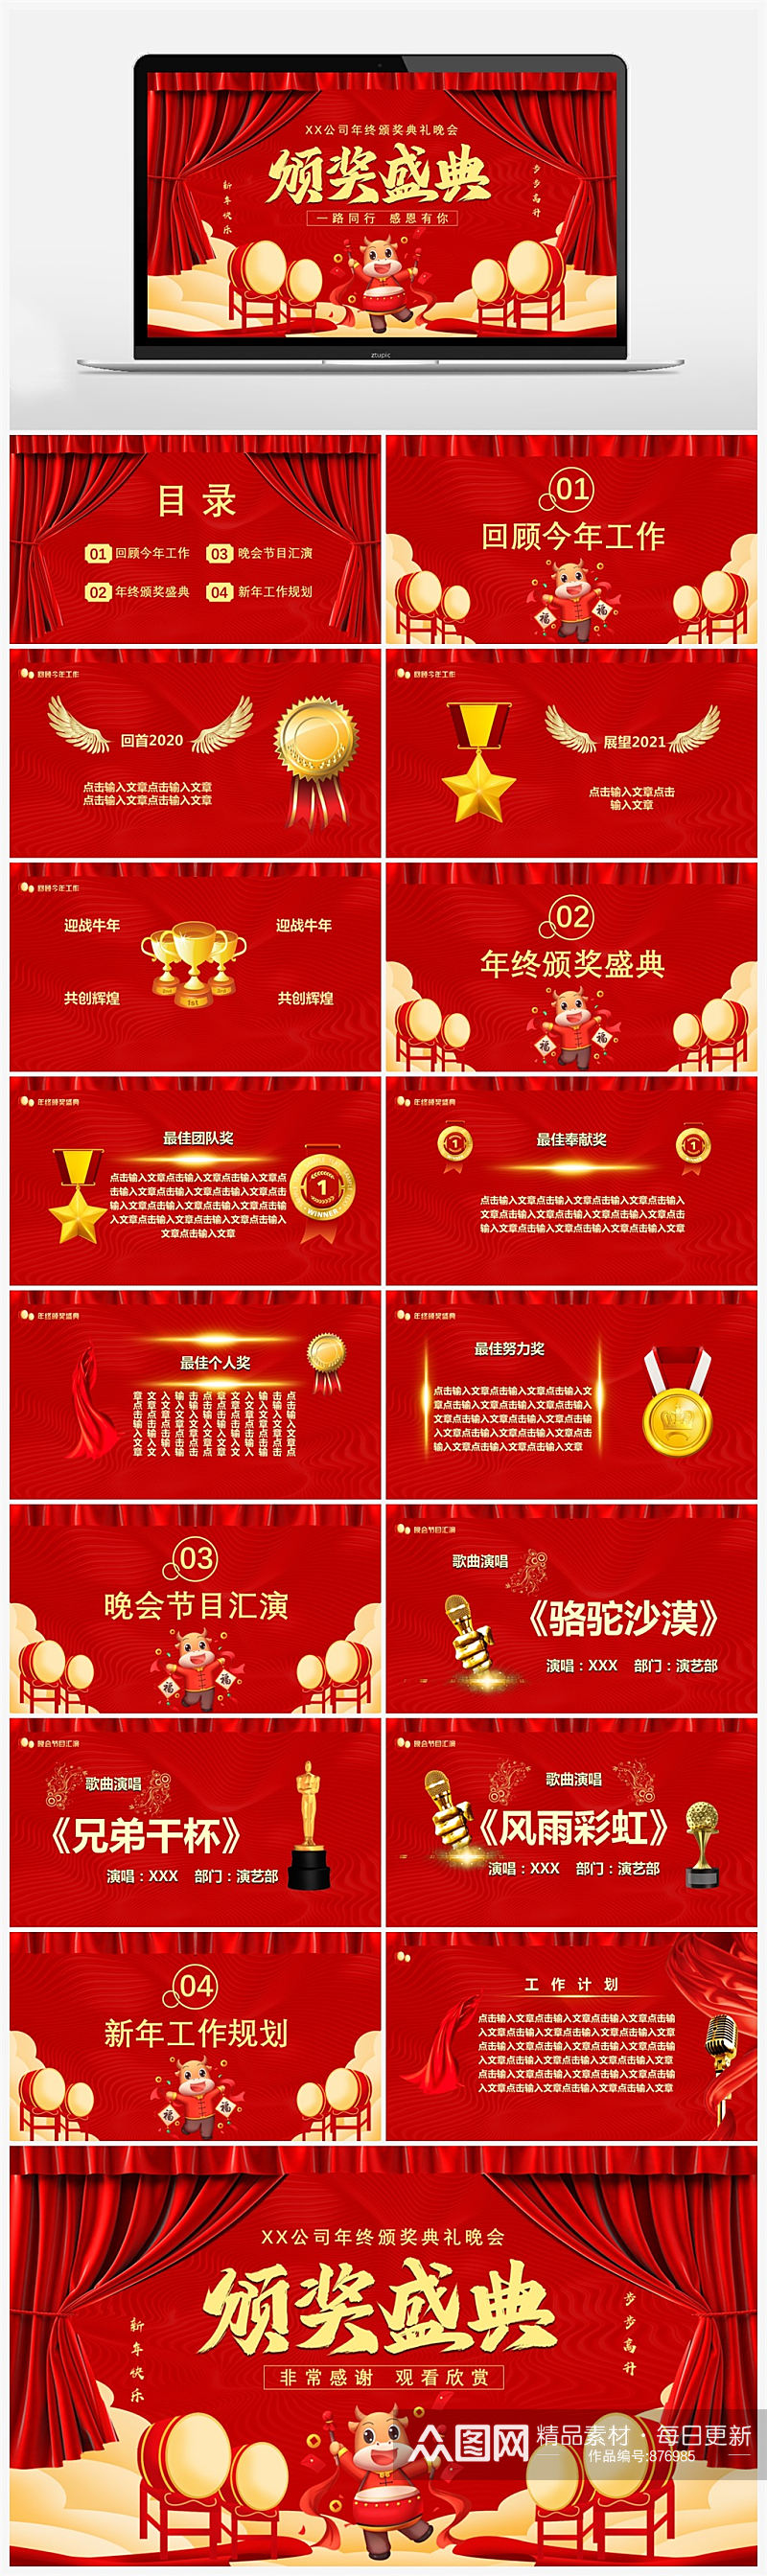 红色中国风公司年终颁奖典礼晚会PPT素材